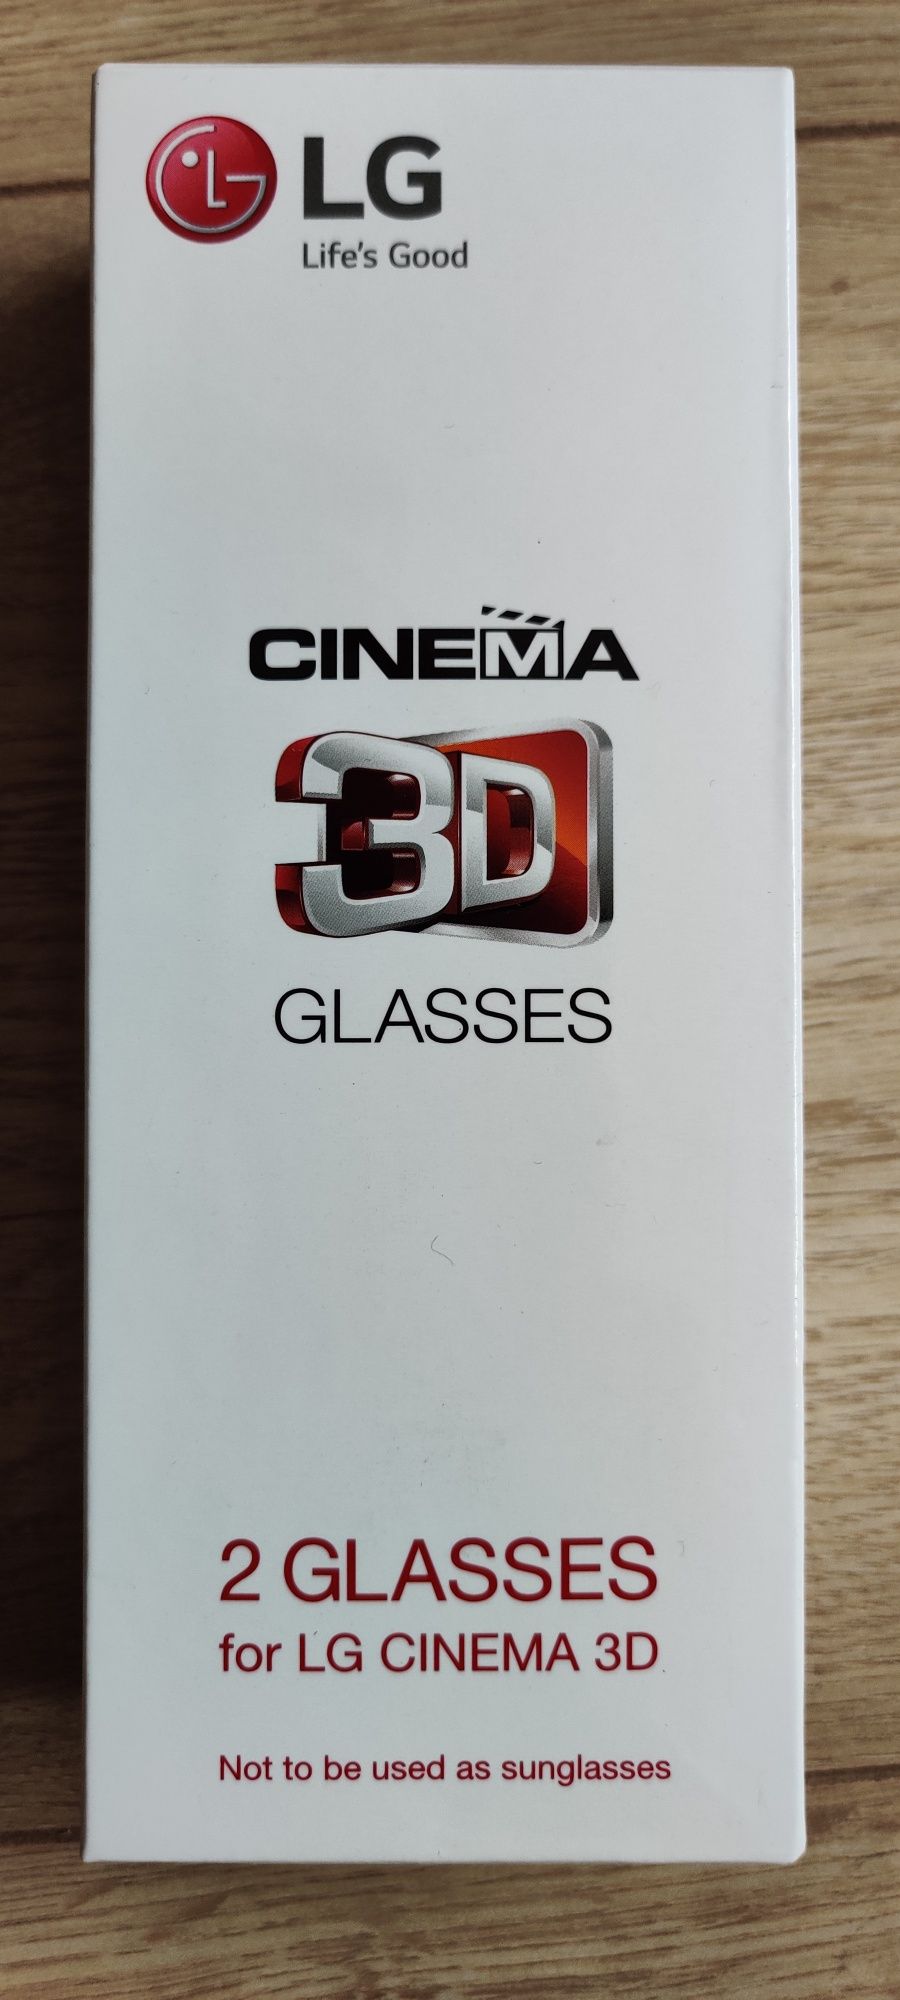 Nowe okulary Cinema 3d Glasses LG nigdy nieużywane